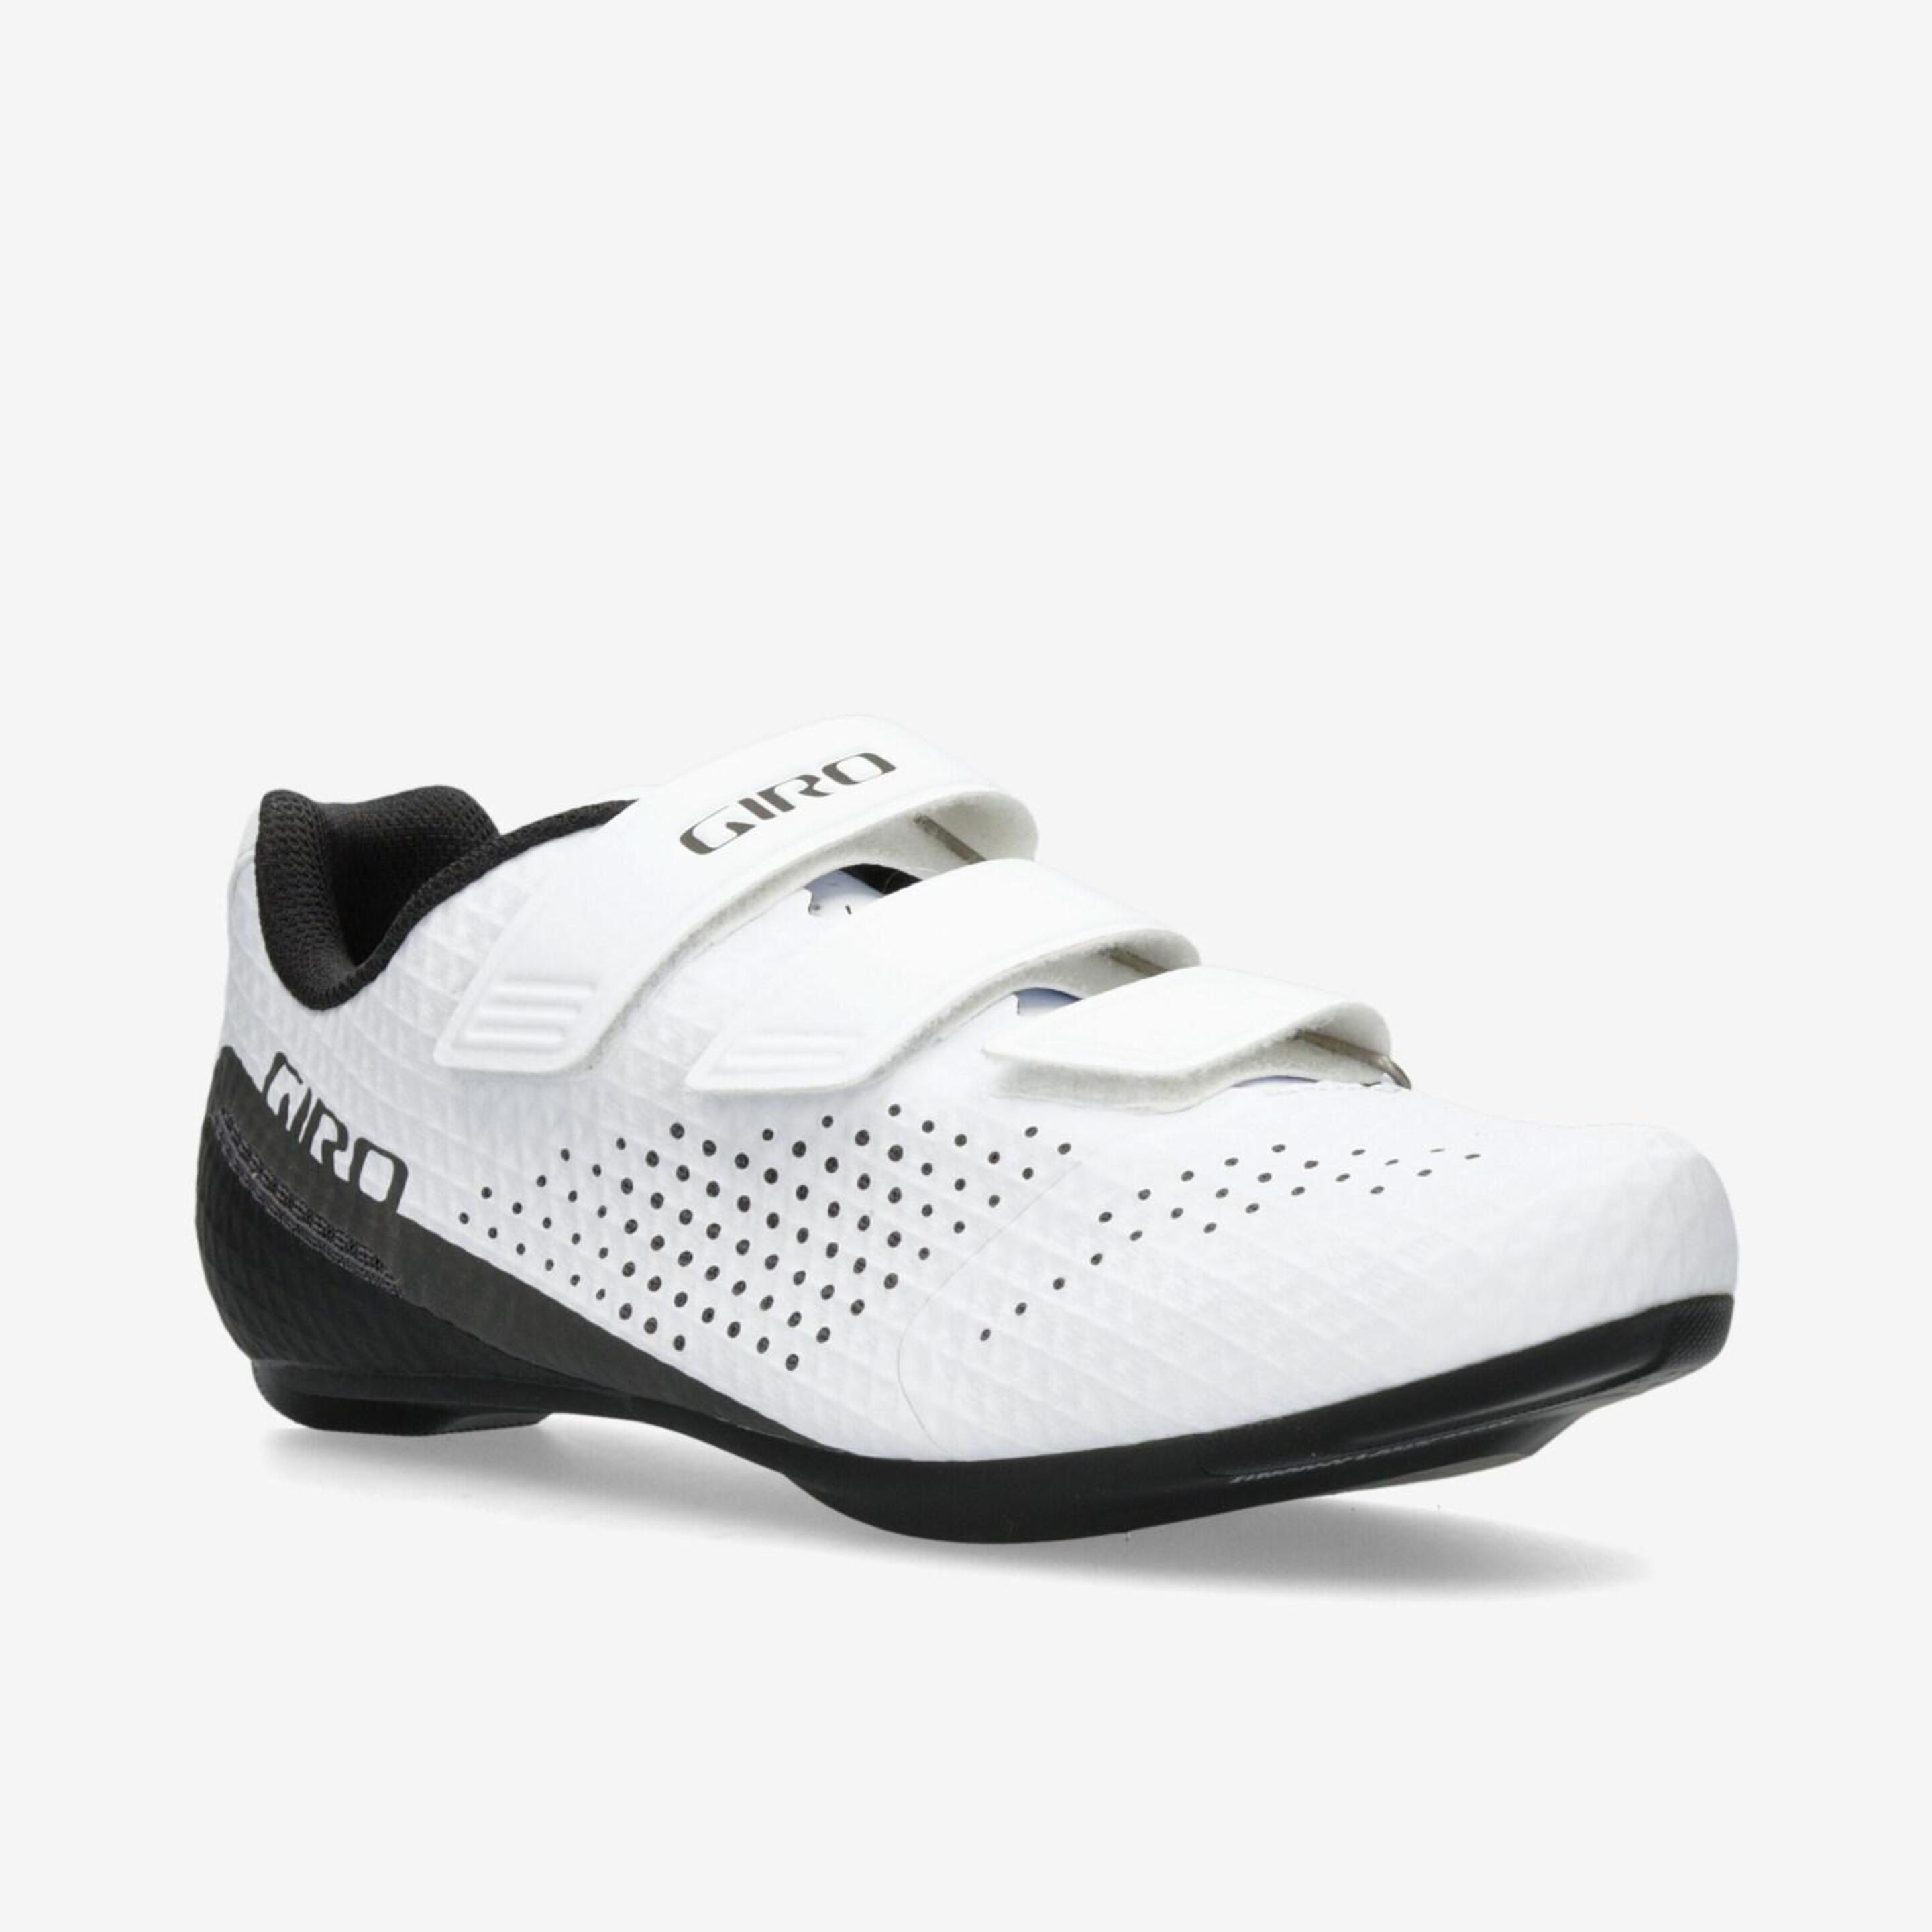 Giro Stylus - Blanco - Zapatillas Ciclismo Hombre